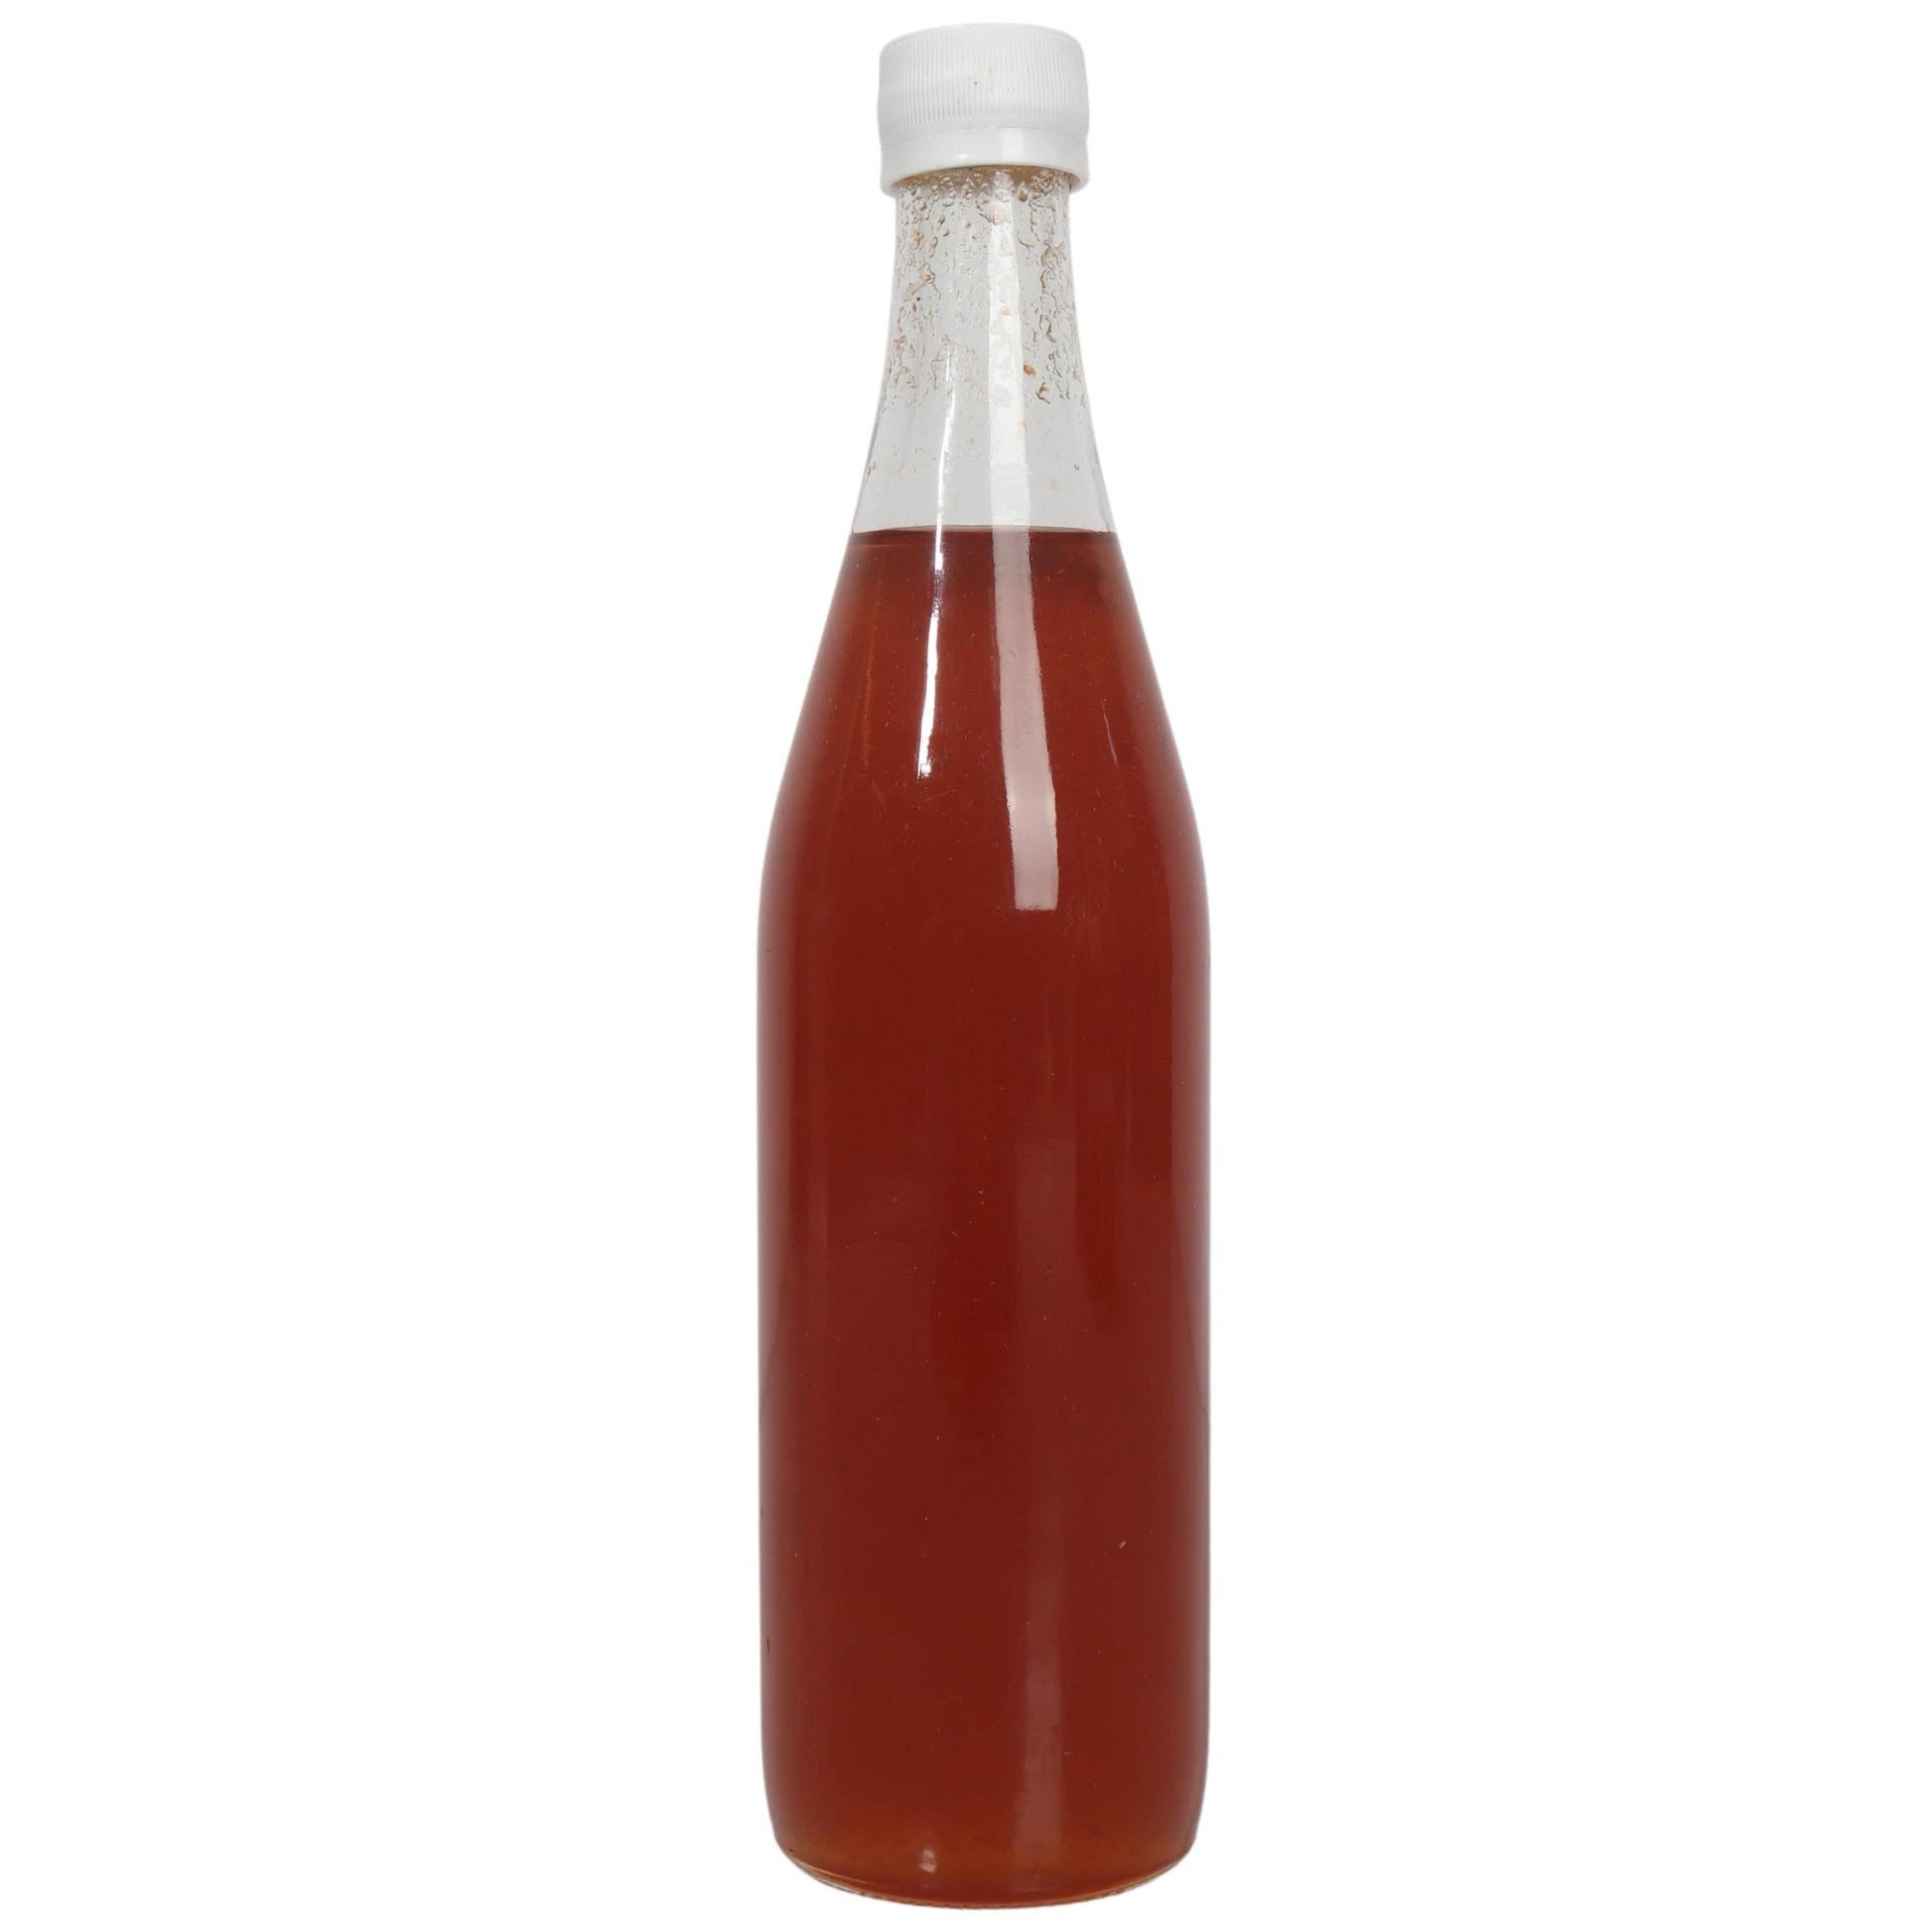 JANA AL DAYAA Mounit El Day3a JANA AL DAYAA - Peach Syrup (Bottle)